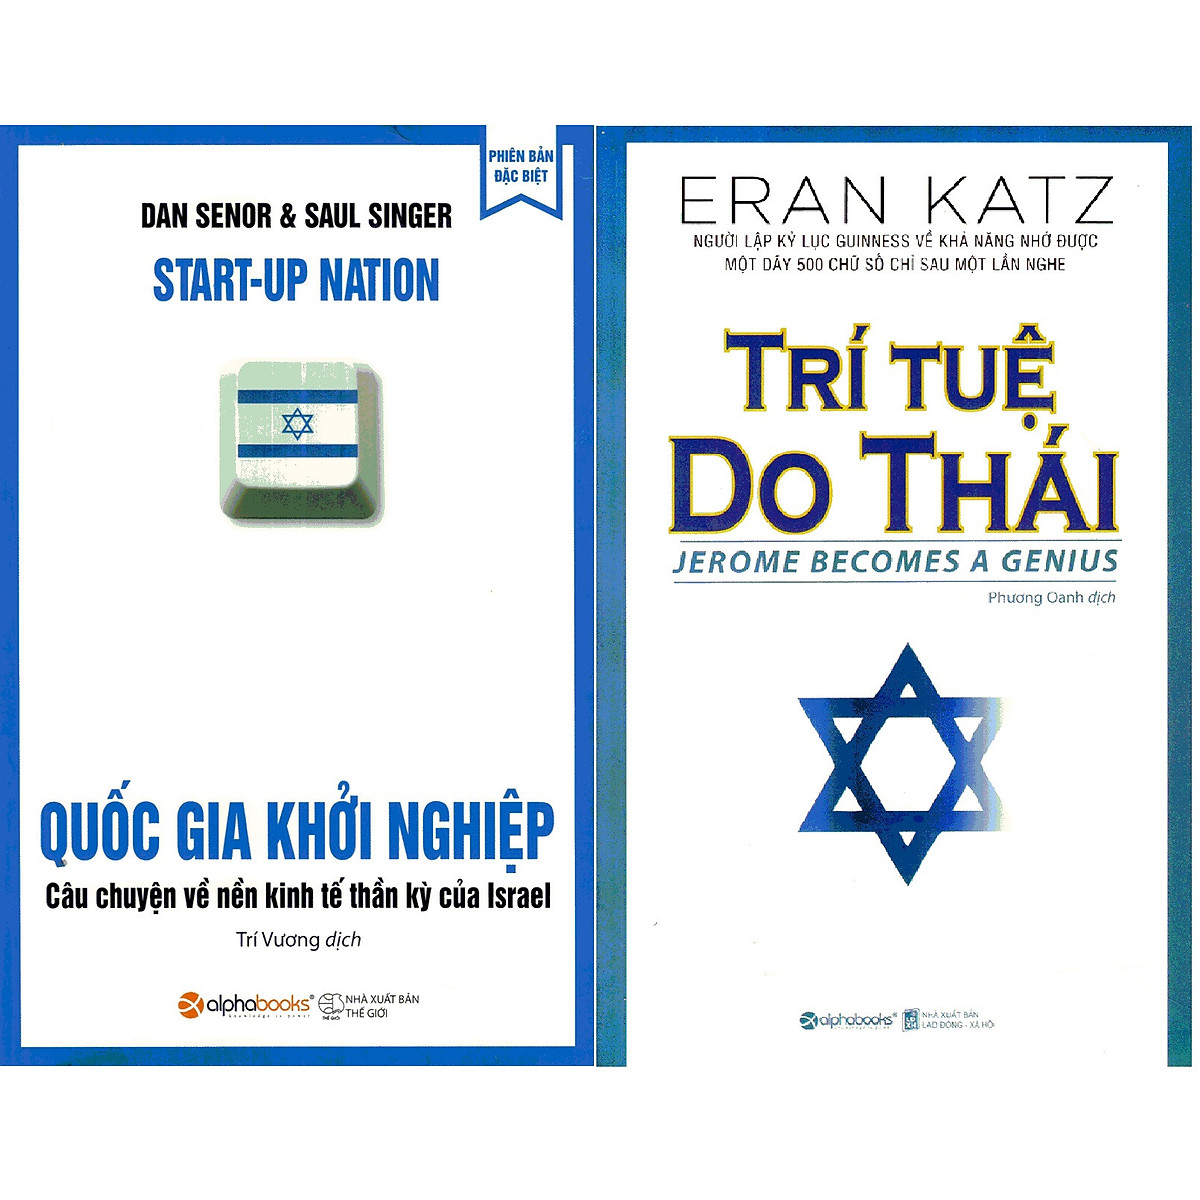 Combo Giải Mã Bí Mật Thông Minh Của Dân Tộc Do Thái ( Quốc Gia Khởi Nghiệp + Trí Tuệ Do Thái ) tặng kèm bookmark Sáng Tạo